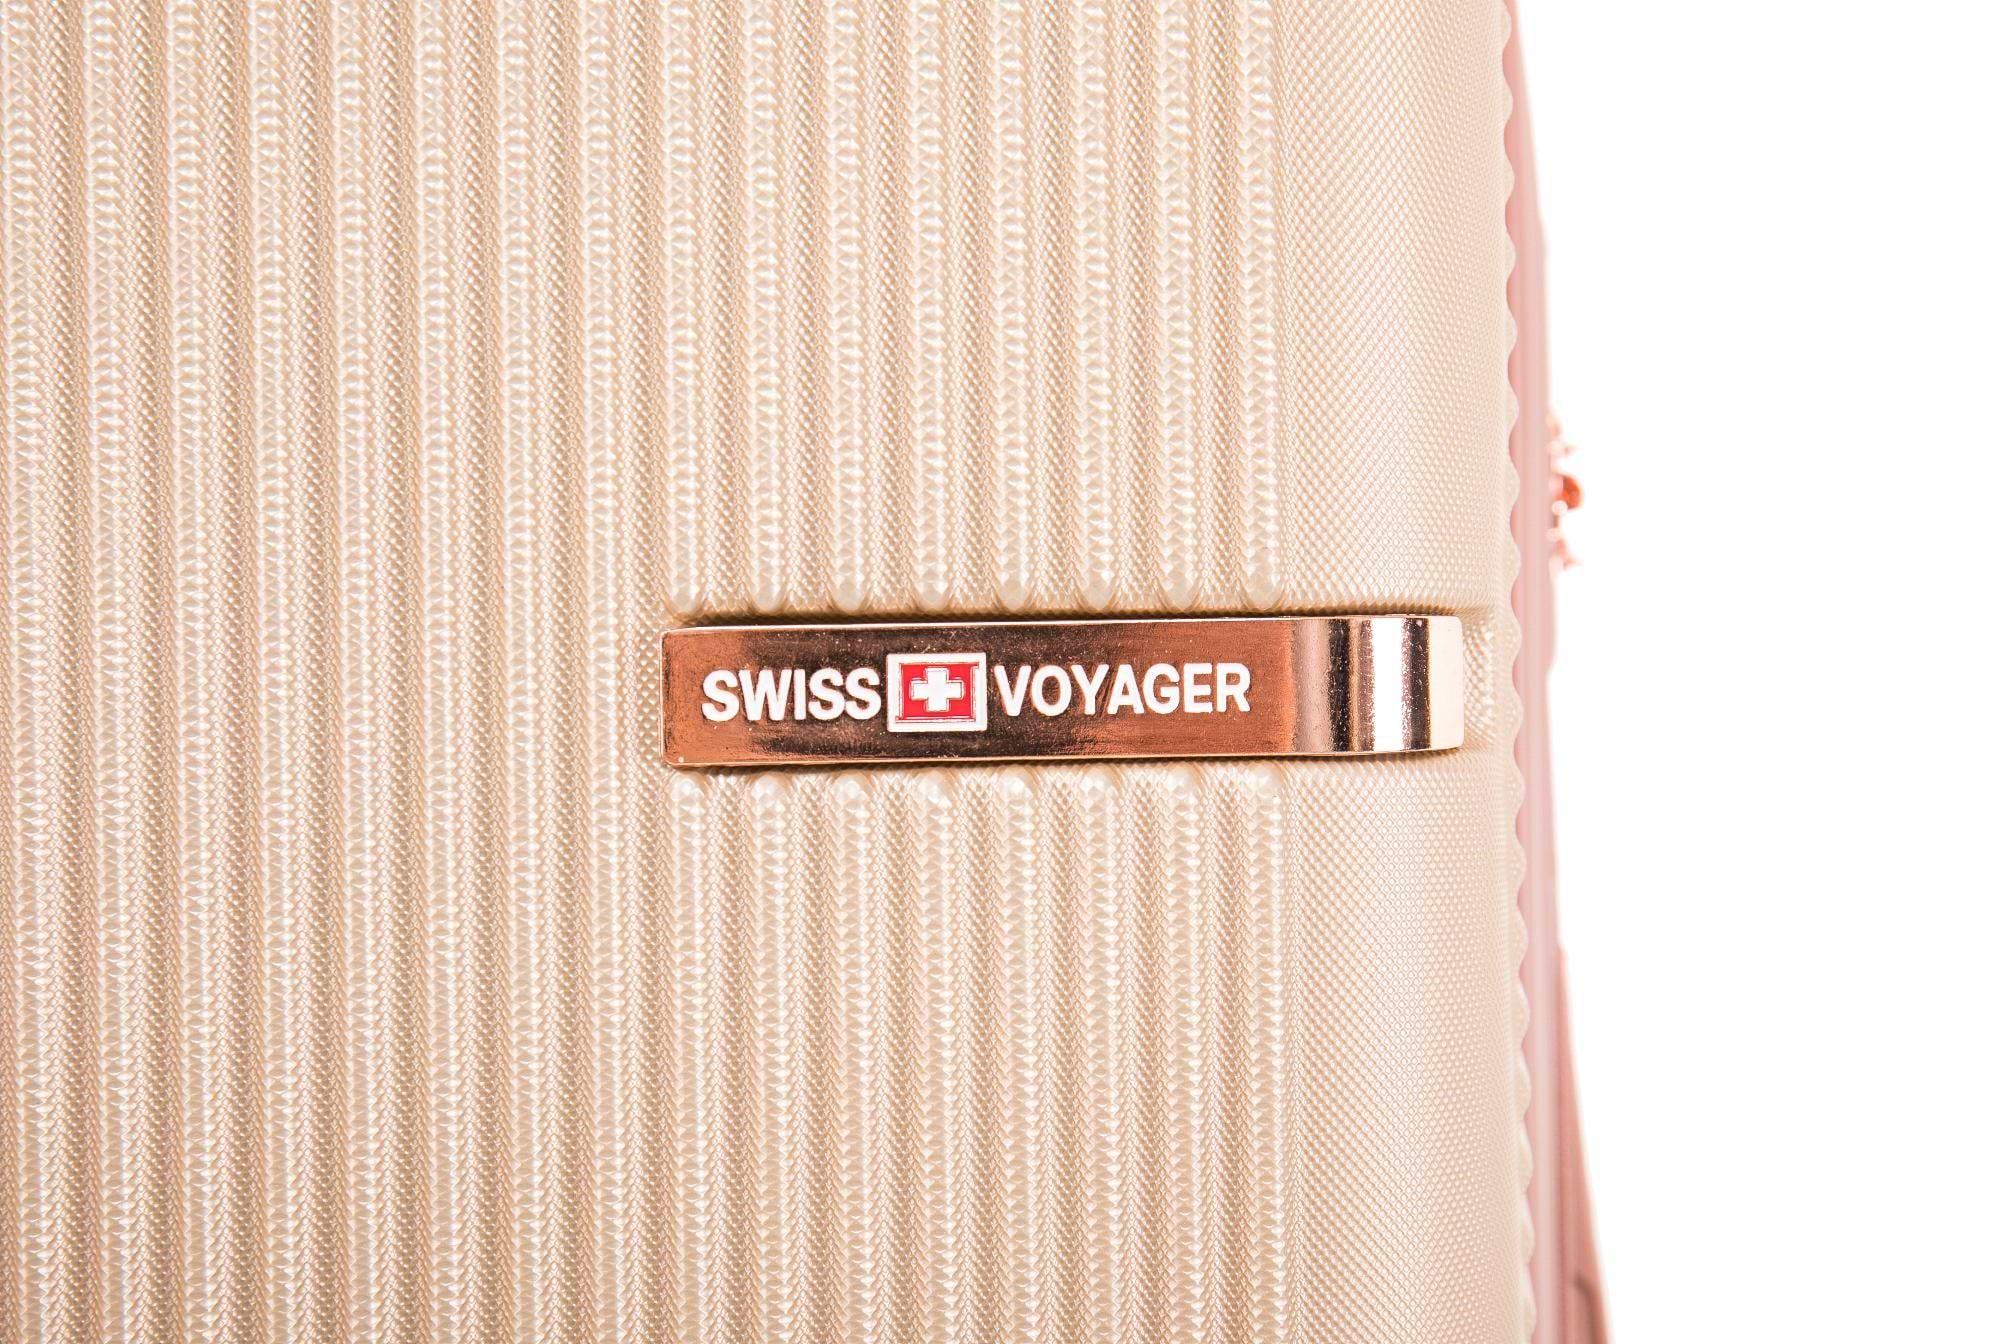 סט מזוודות קשיחות יוקרתי 3 יחידות מידות |30|26|20 אינץ' דגם Toronto צבע שמפניה גולד Swiss Voyager - תיק איפור מתנה